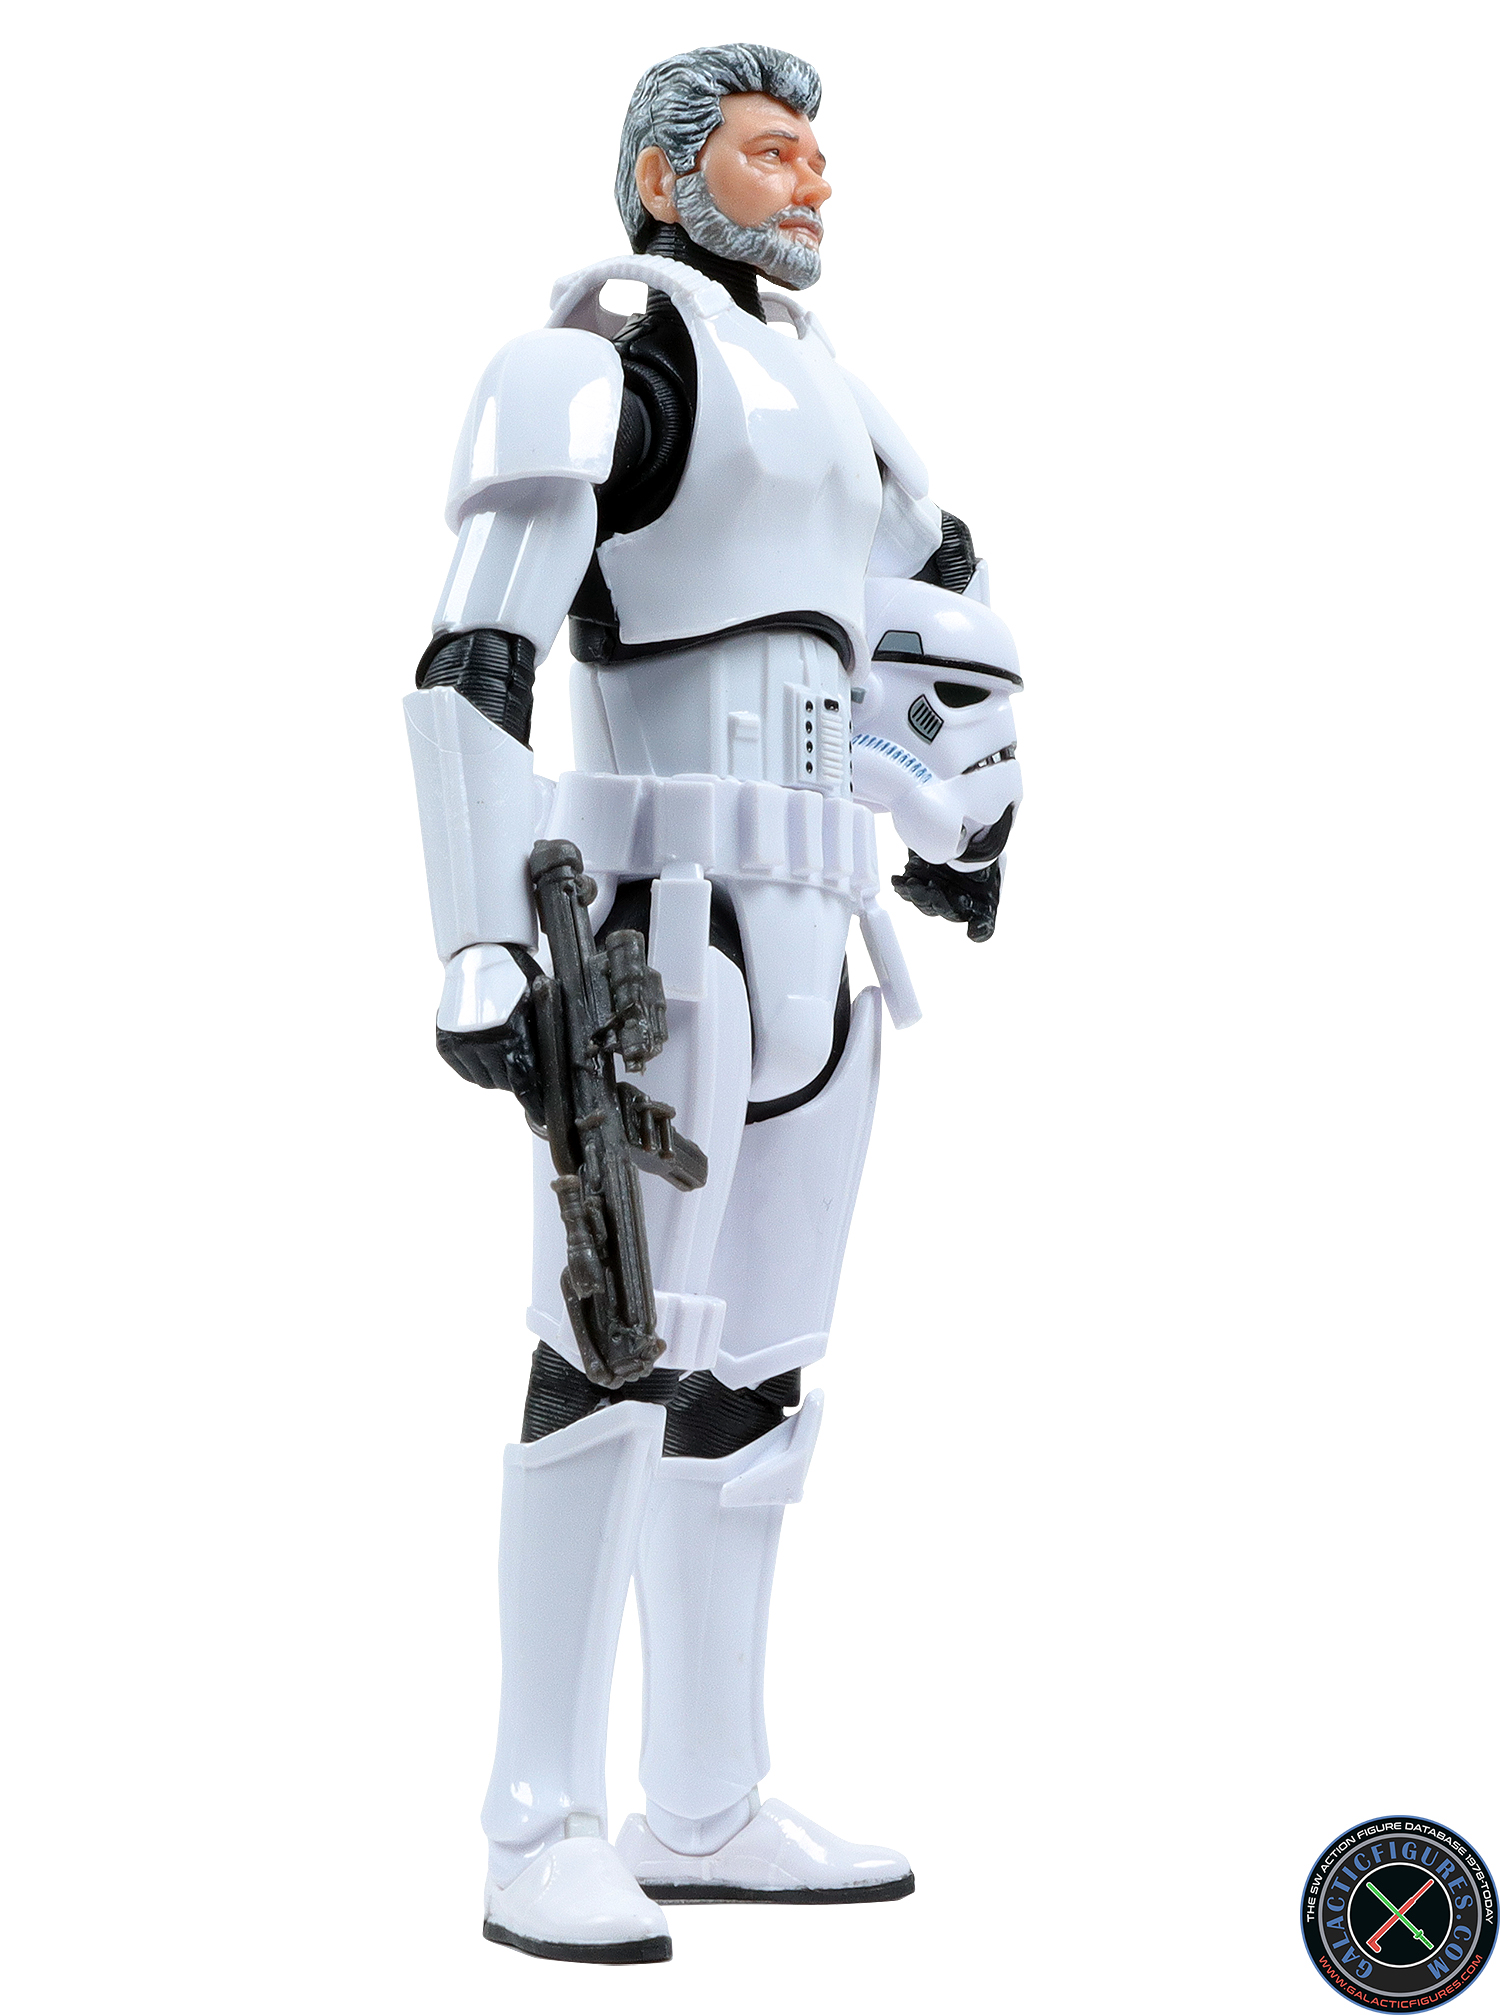 george lucas in stormtrooper disguise